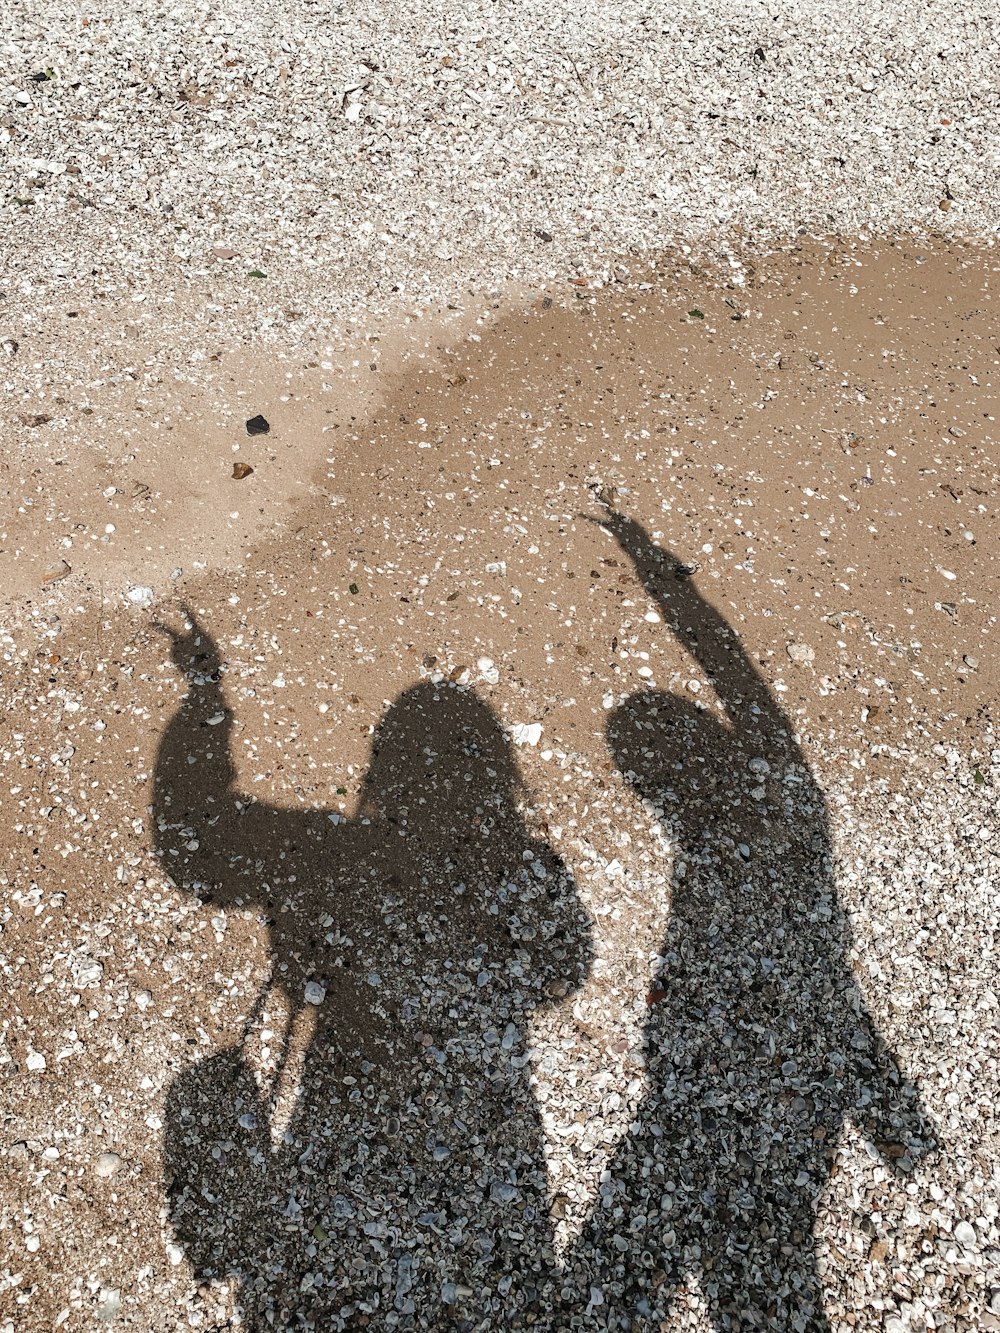 sombra da pessoa na areia marrom durante o dia